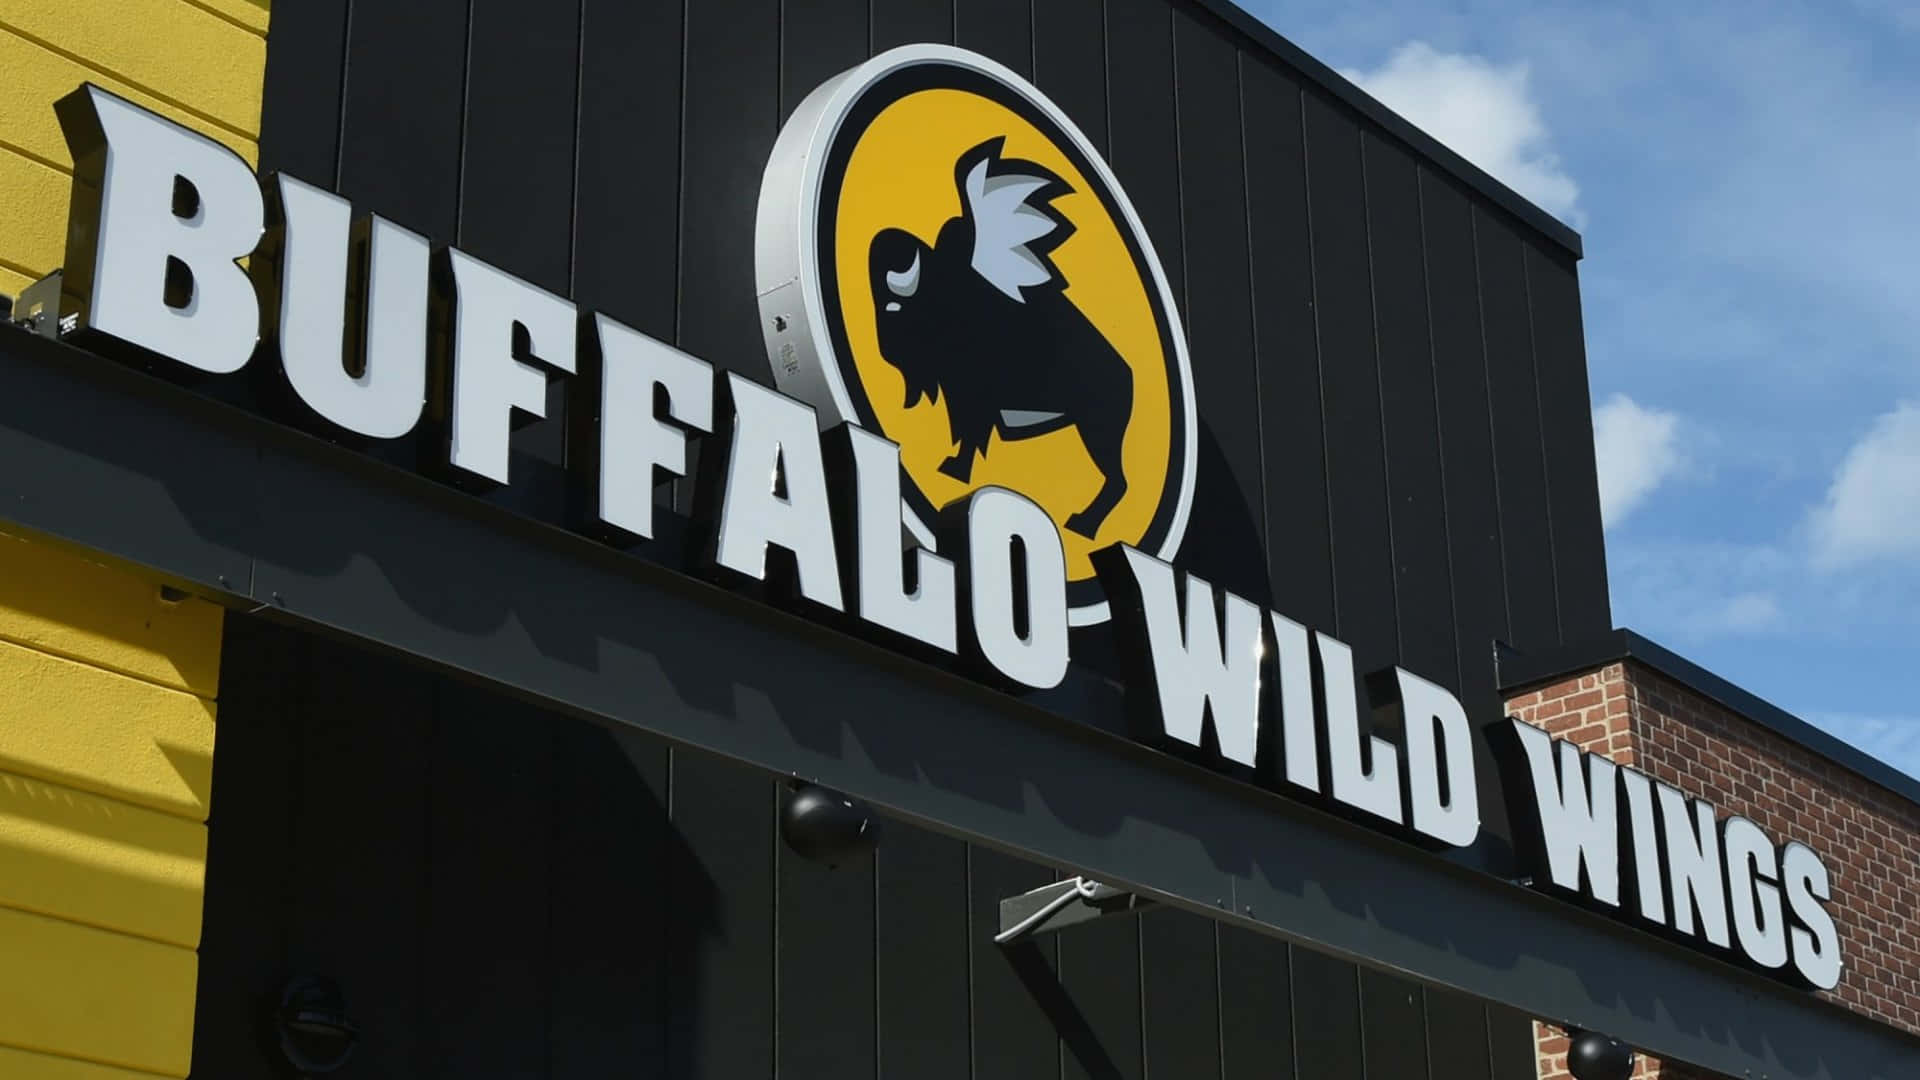 Blivklar Til At Nyde Smagen Af Buffalo Wild Wings.